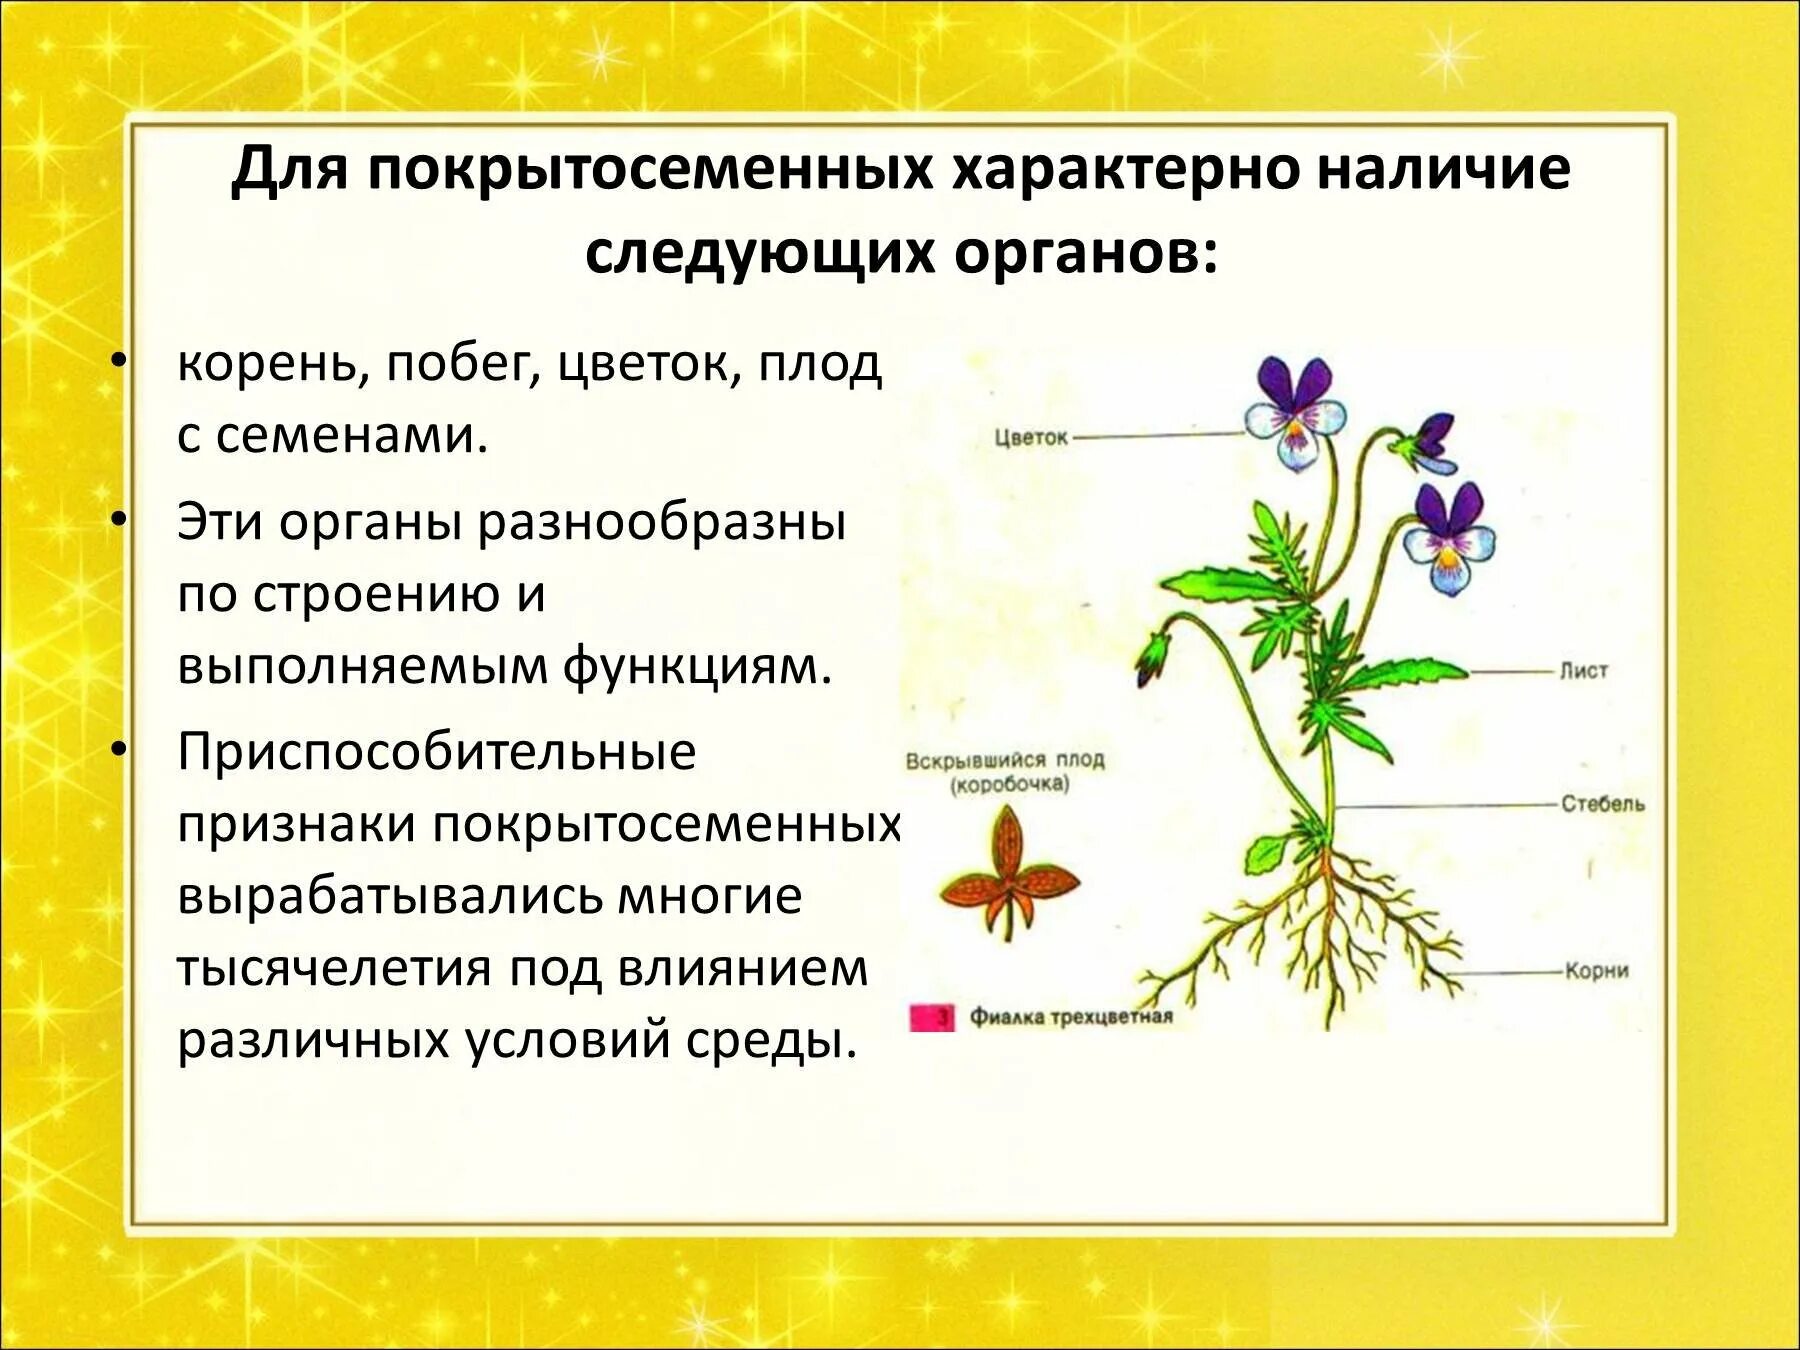 Покрытосеменные цветковые растения строение. Строение цветковых покрытосеменных растений. Особенности строения покрытосеменных растений. Изучение внешнего строения покрытосеменных(цветковых) растений.